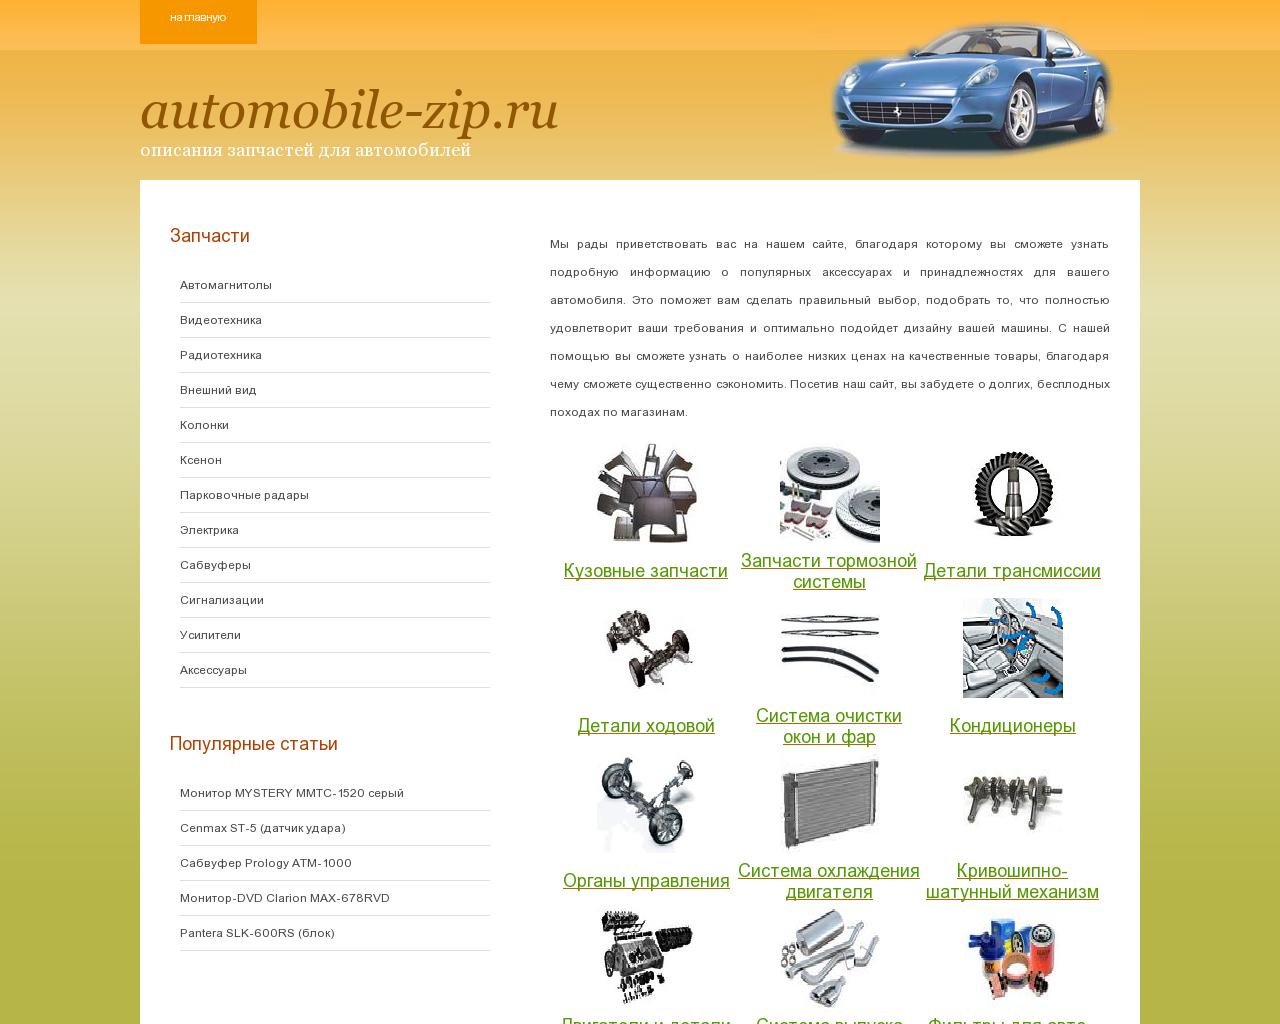 Изображение сайта automobile-zip.ru в разрешении 1280x1024